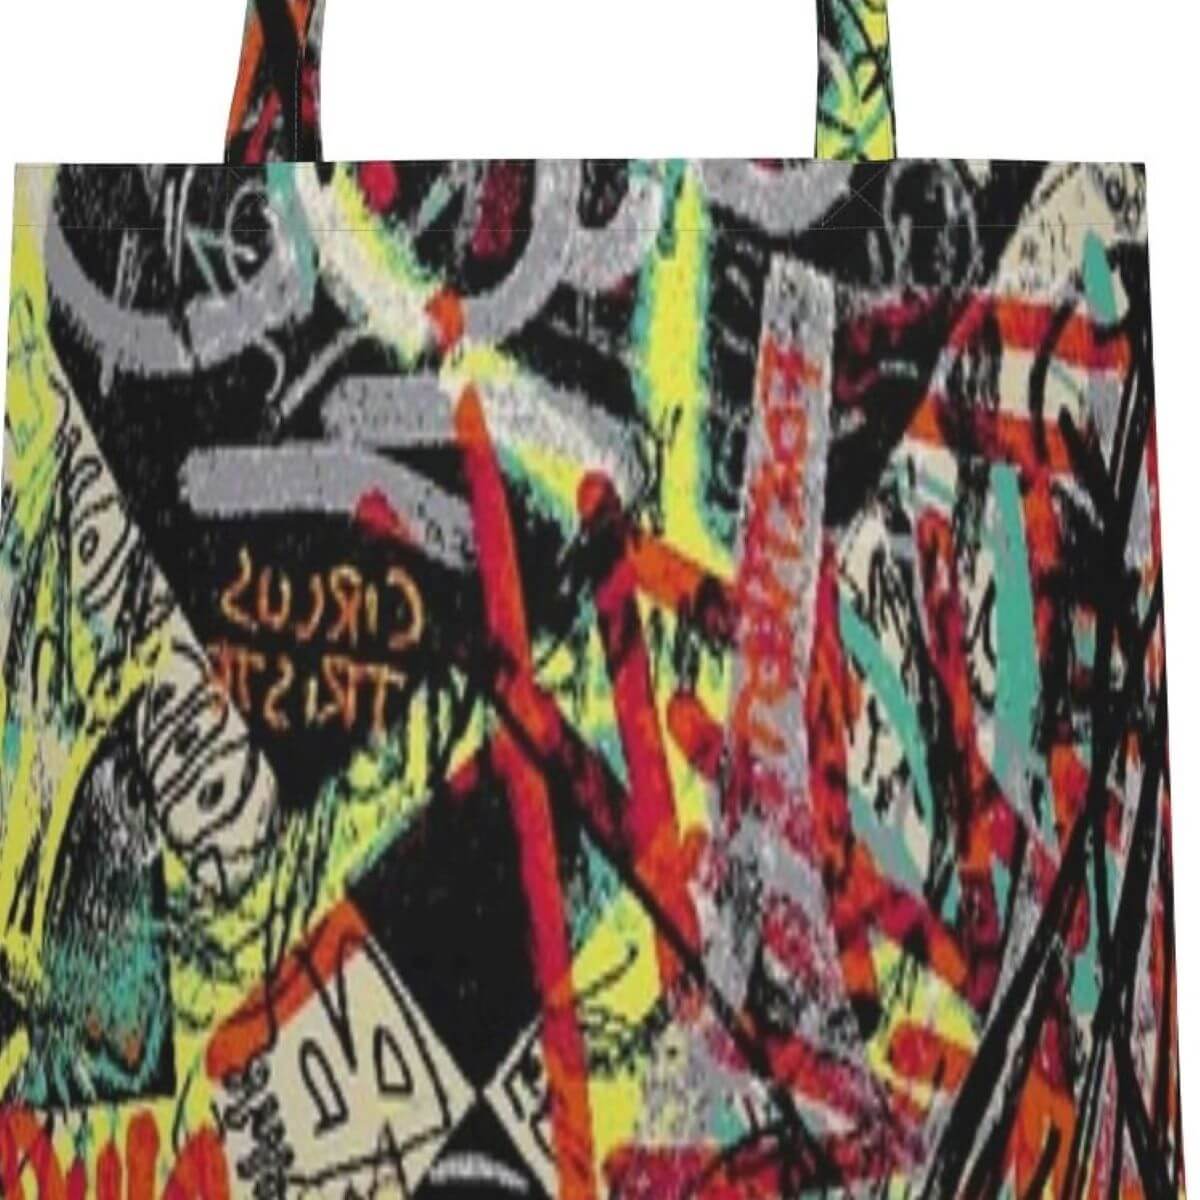 Torba bawełniana młodzieżowa grafiti TAVASTIA. Fragment torby na zakupy typu shopper w kolorowy wzór. Skandynawski nowoczesny design